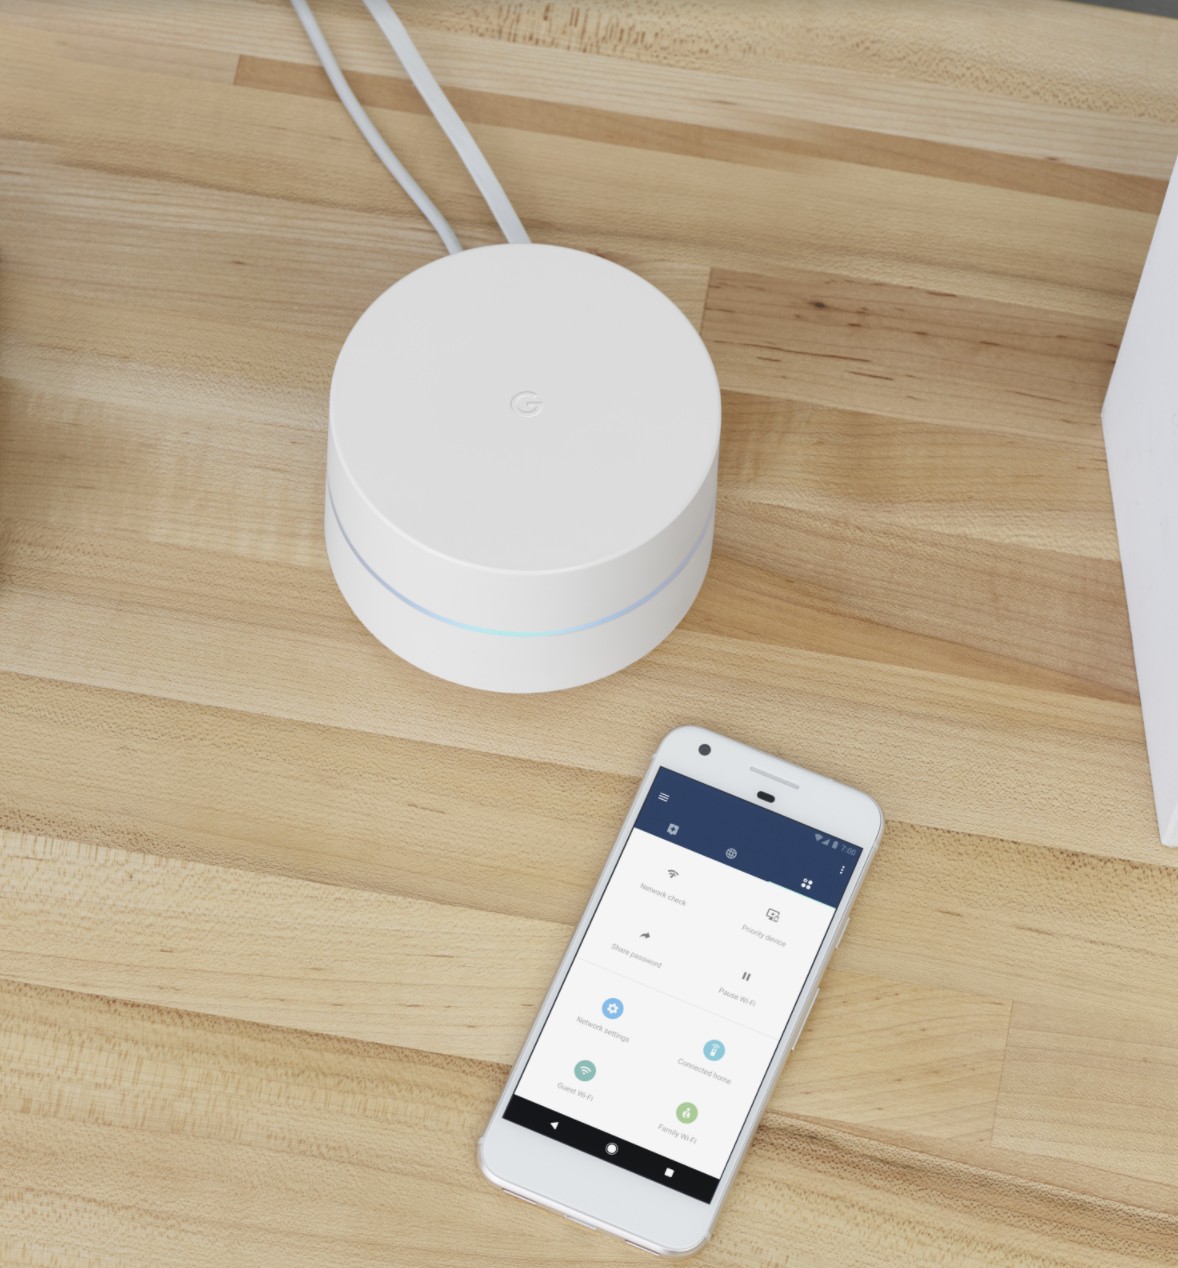 Assim como acontece com o Nest Audio e o Nest mini, o gerenciamento do wi-fi também ocorre pelo aplicativo Google Home (Foto: Divulgação)